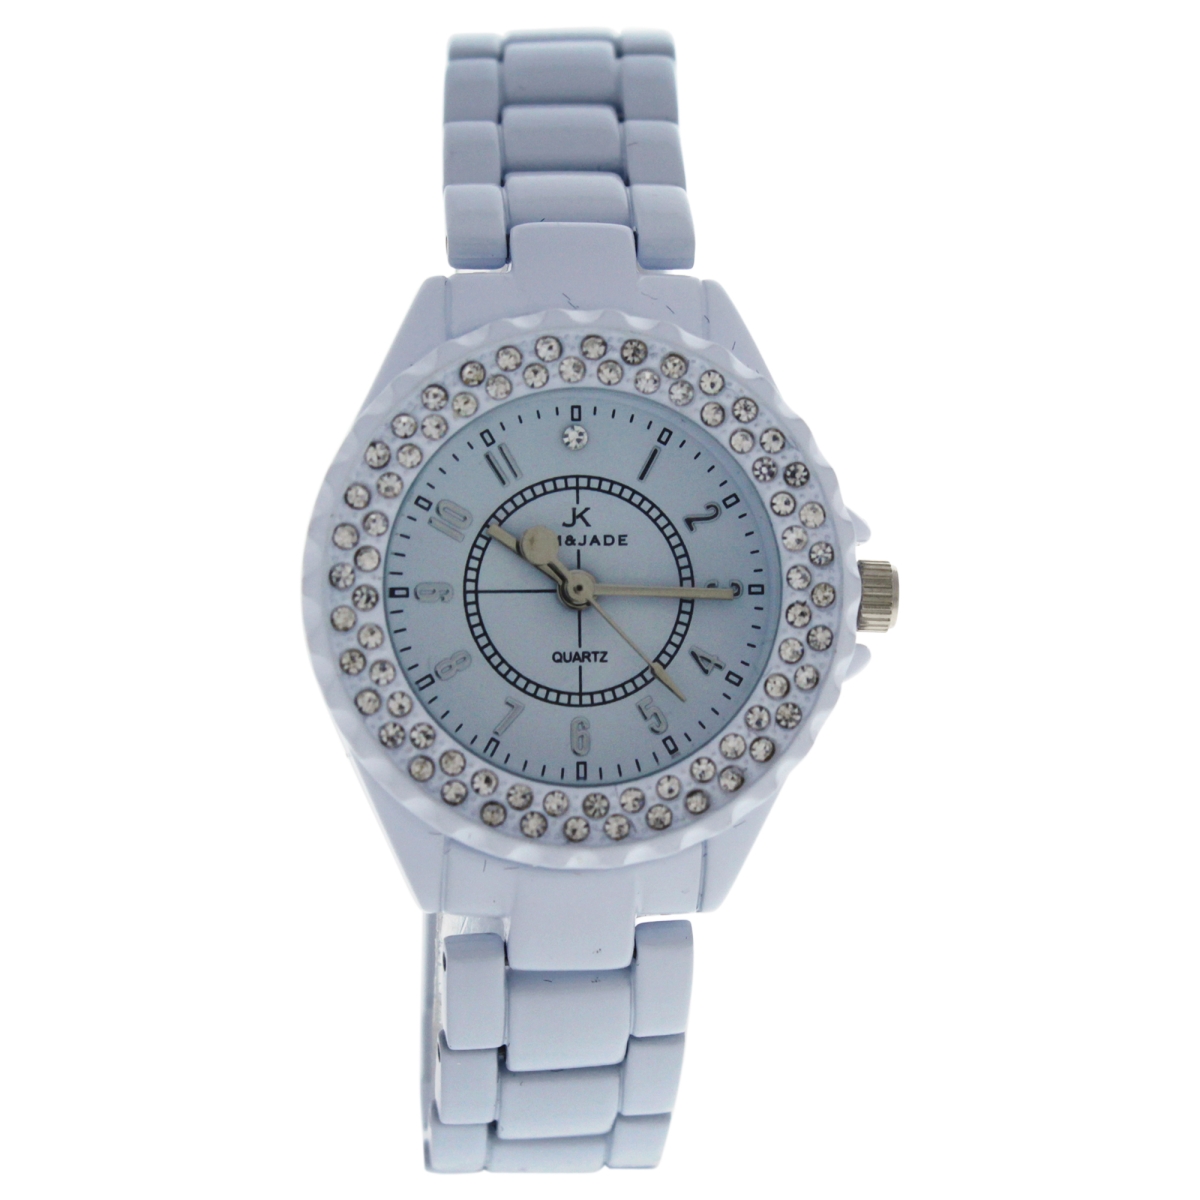 Picture of Kim & Jade W-WAT-1471 White Stainless Steel Bracelet Watch for Women - 2033L-WW